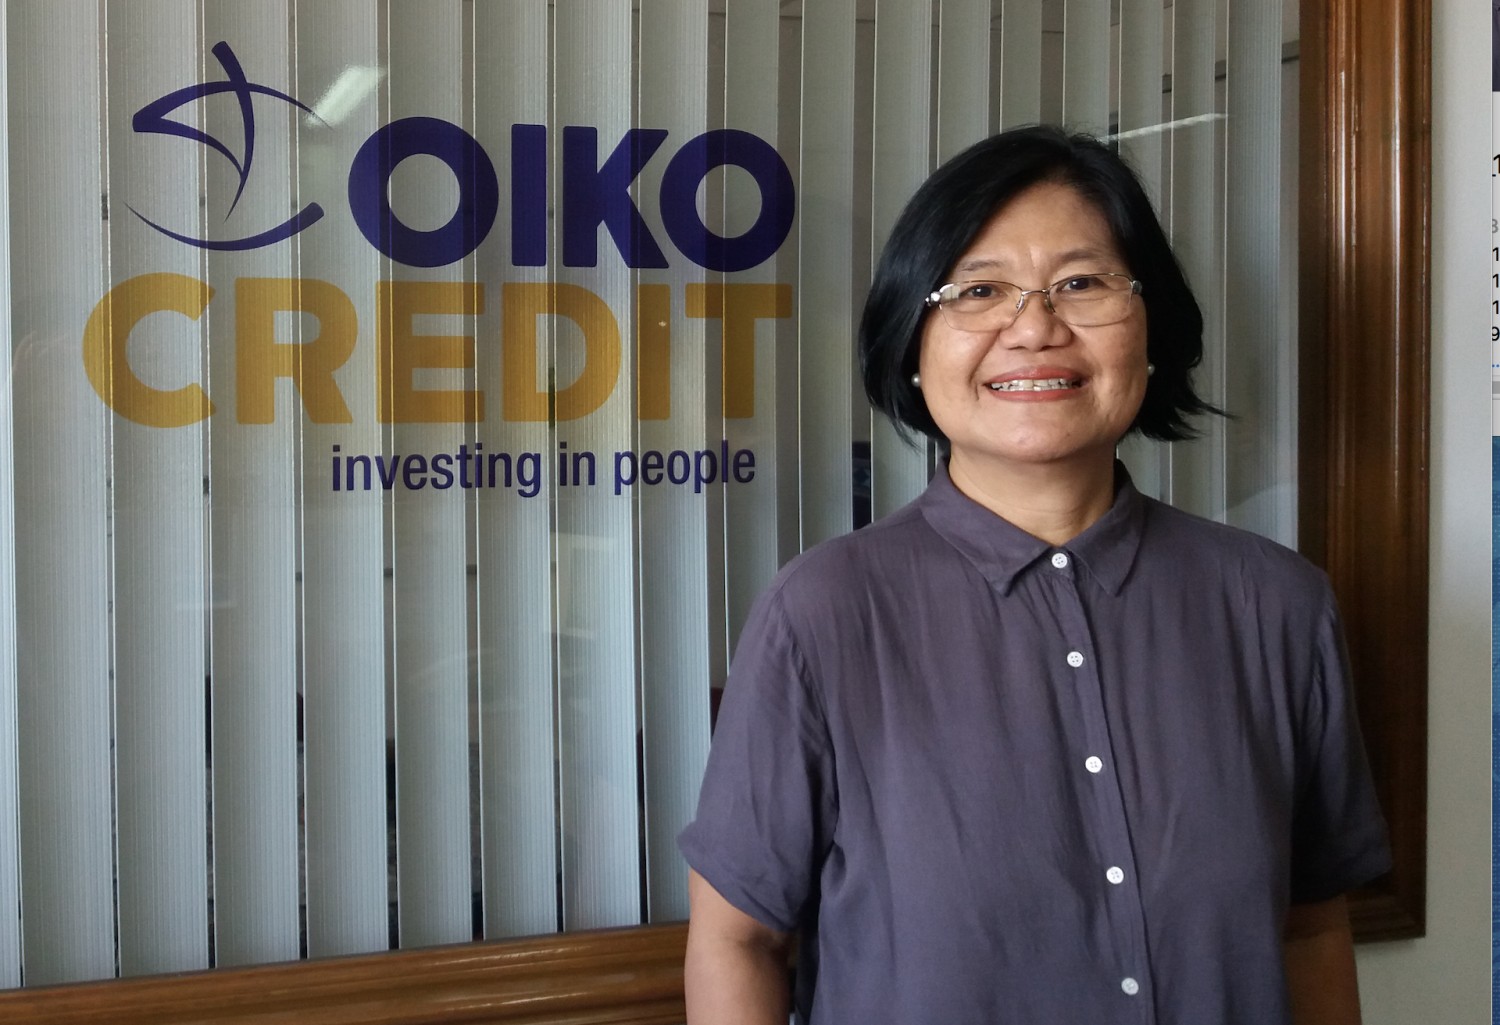 Marilou Juanito, regional koordinator för Oikocredits kapacitetsbyggnad och socialtjänst i Sydostasien.